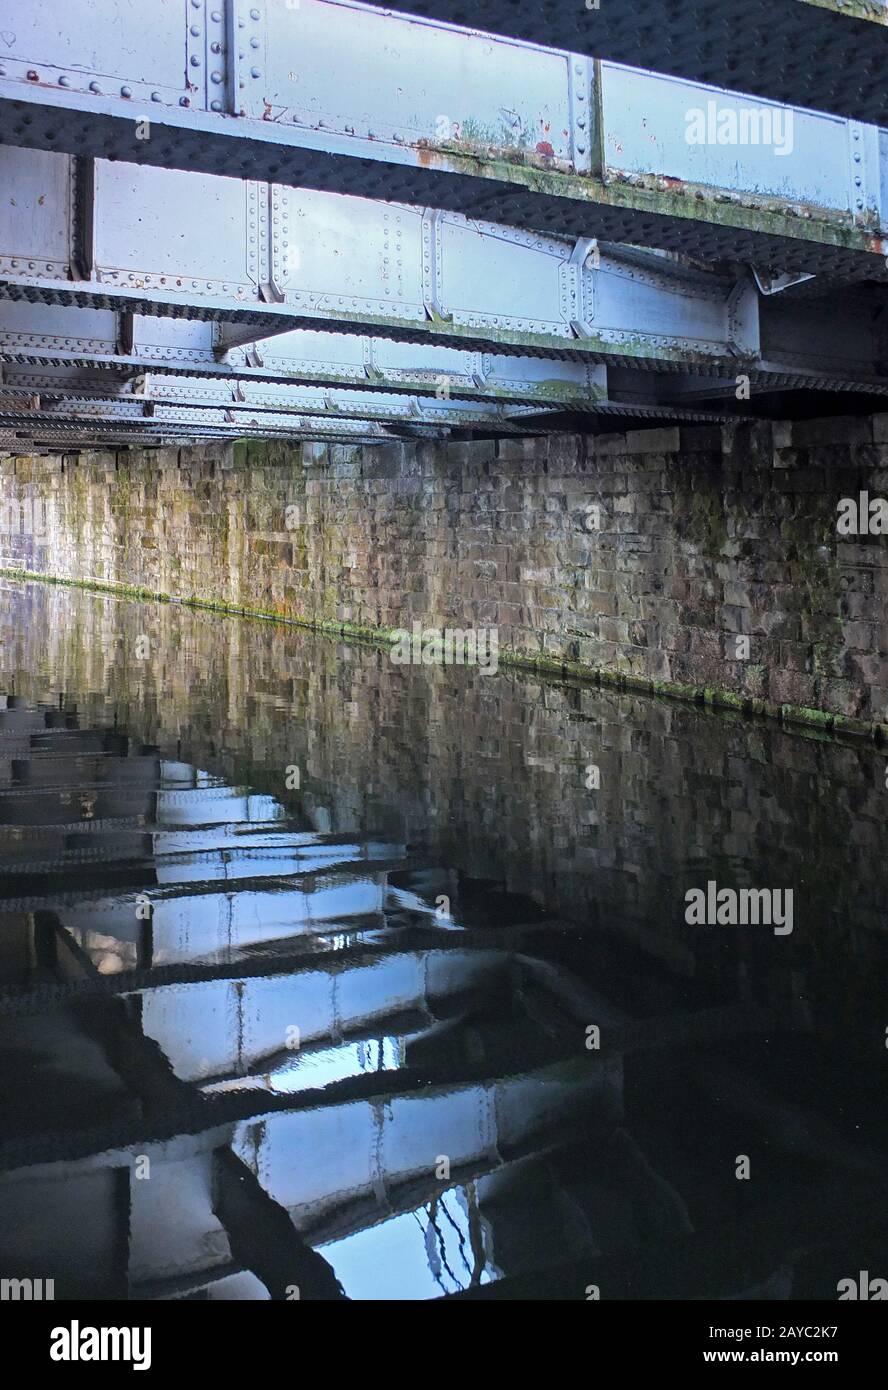 Alte Stahlträger spiegelten sich im Wasser eines dunklen Kanals unter einer Brücke wider Stockfoto